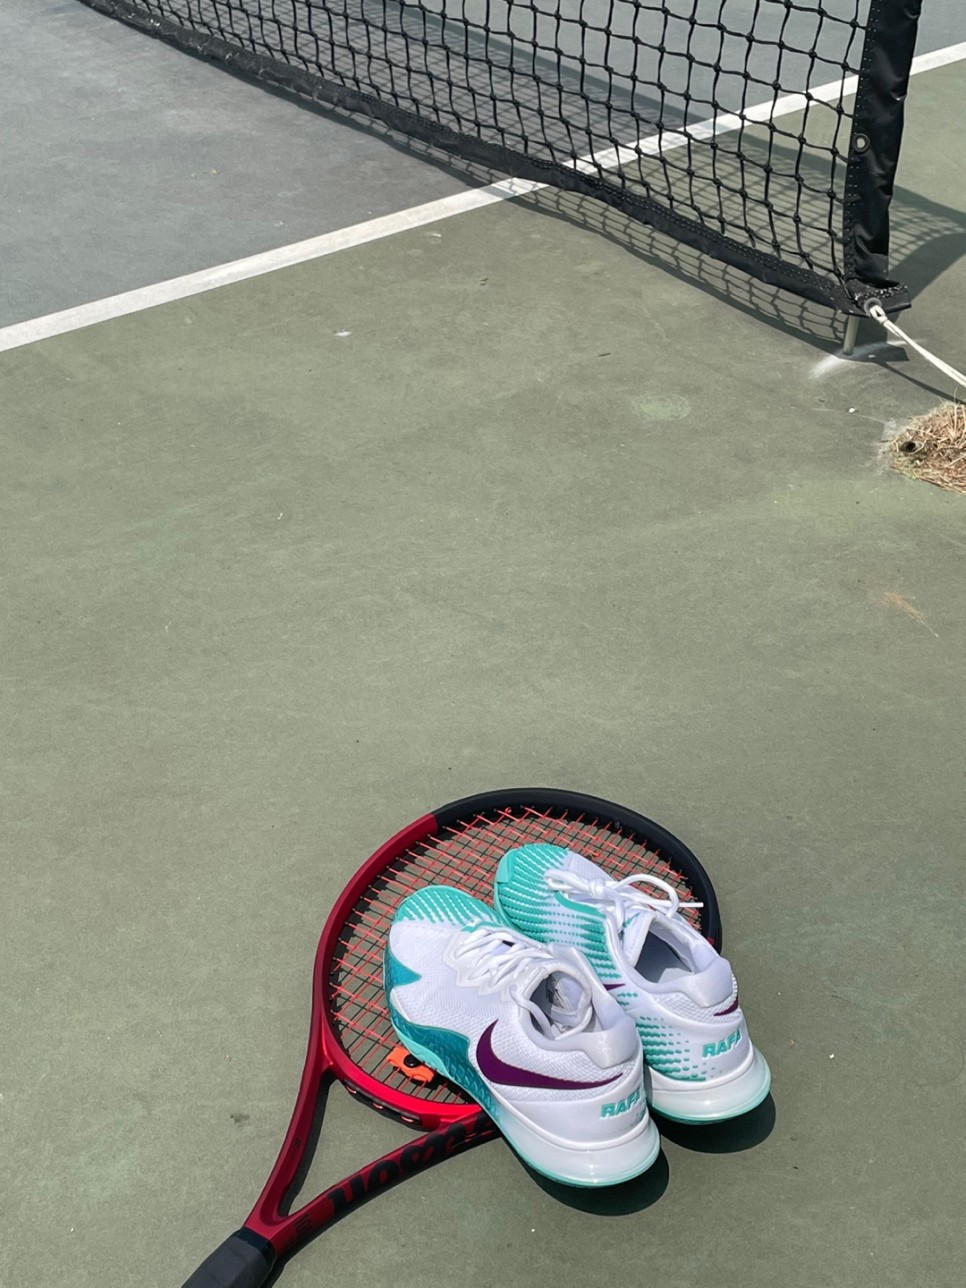 테니스 가방 브랜드 윌슨, 나이키 테니스화 장비 추천 :)